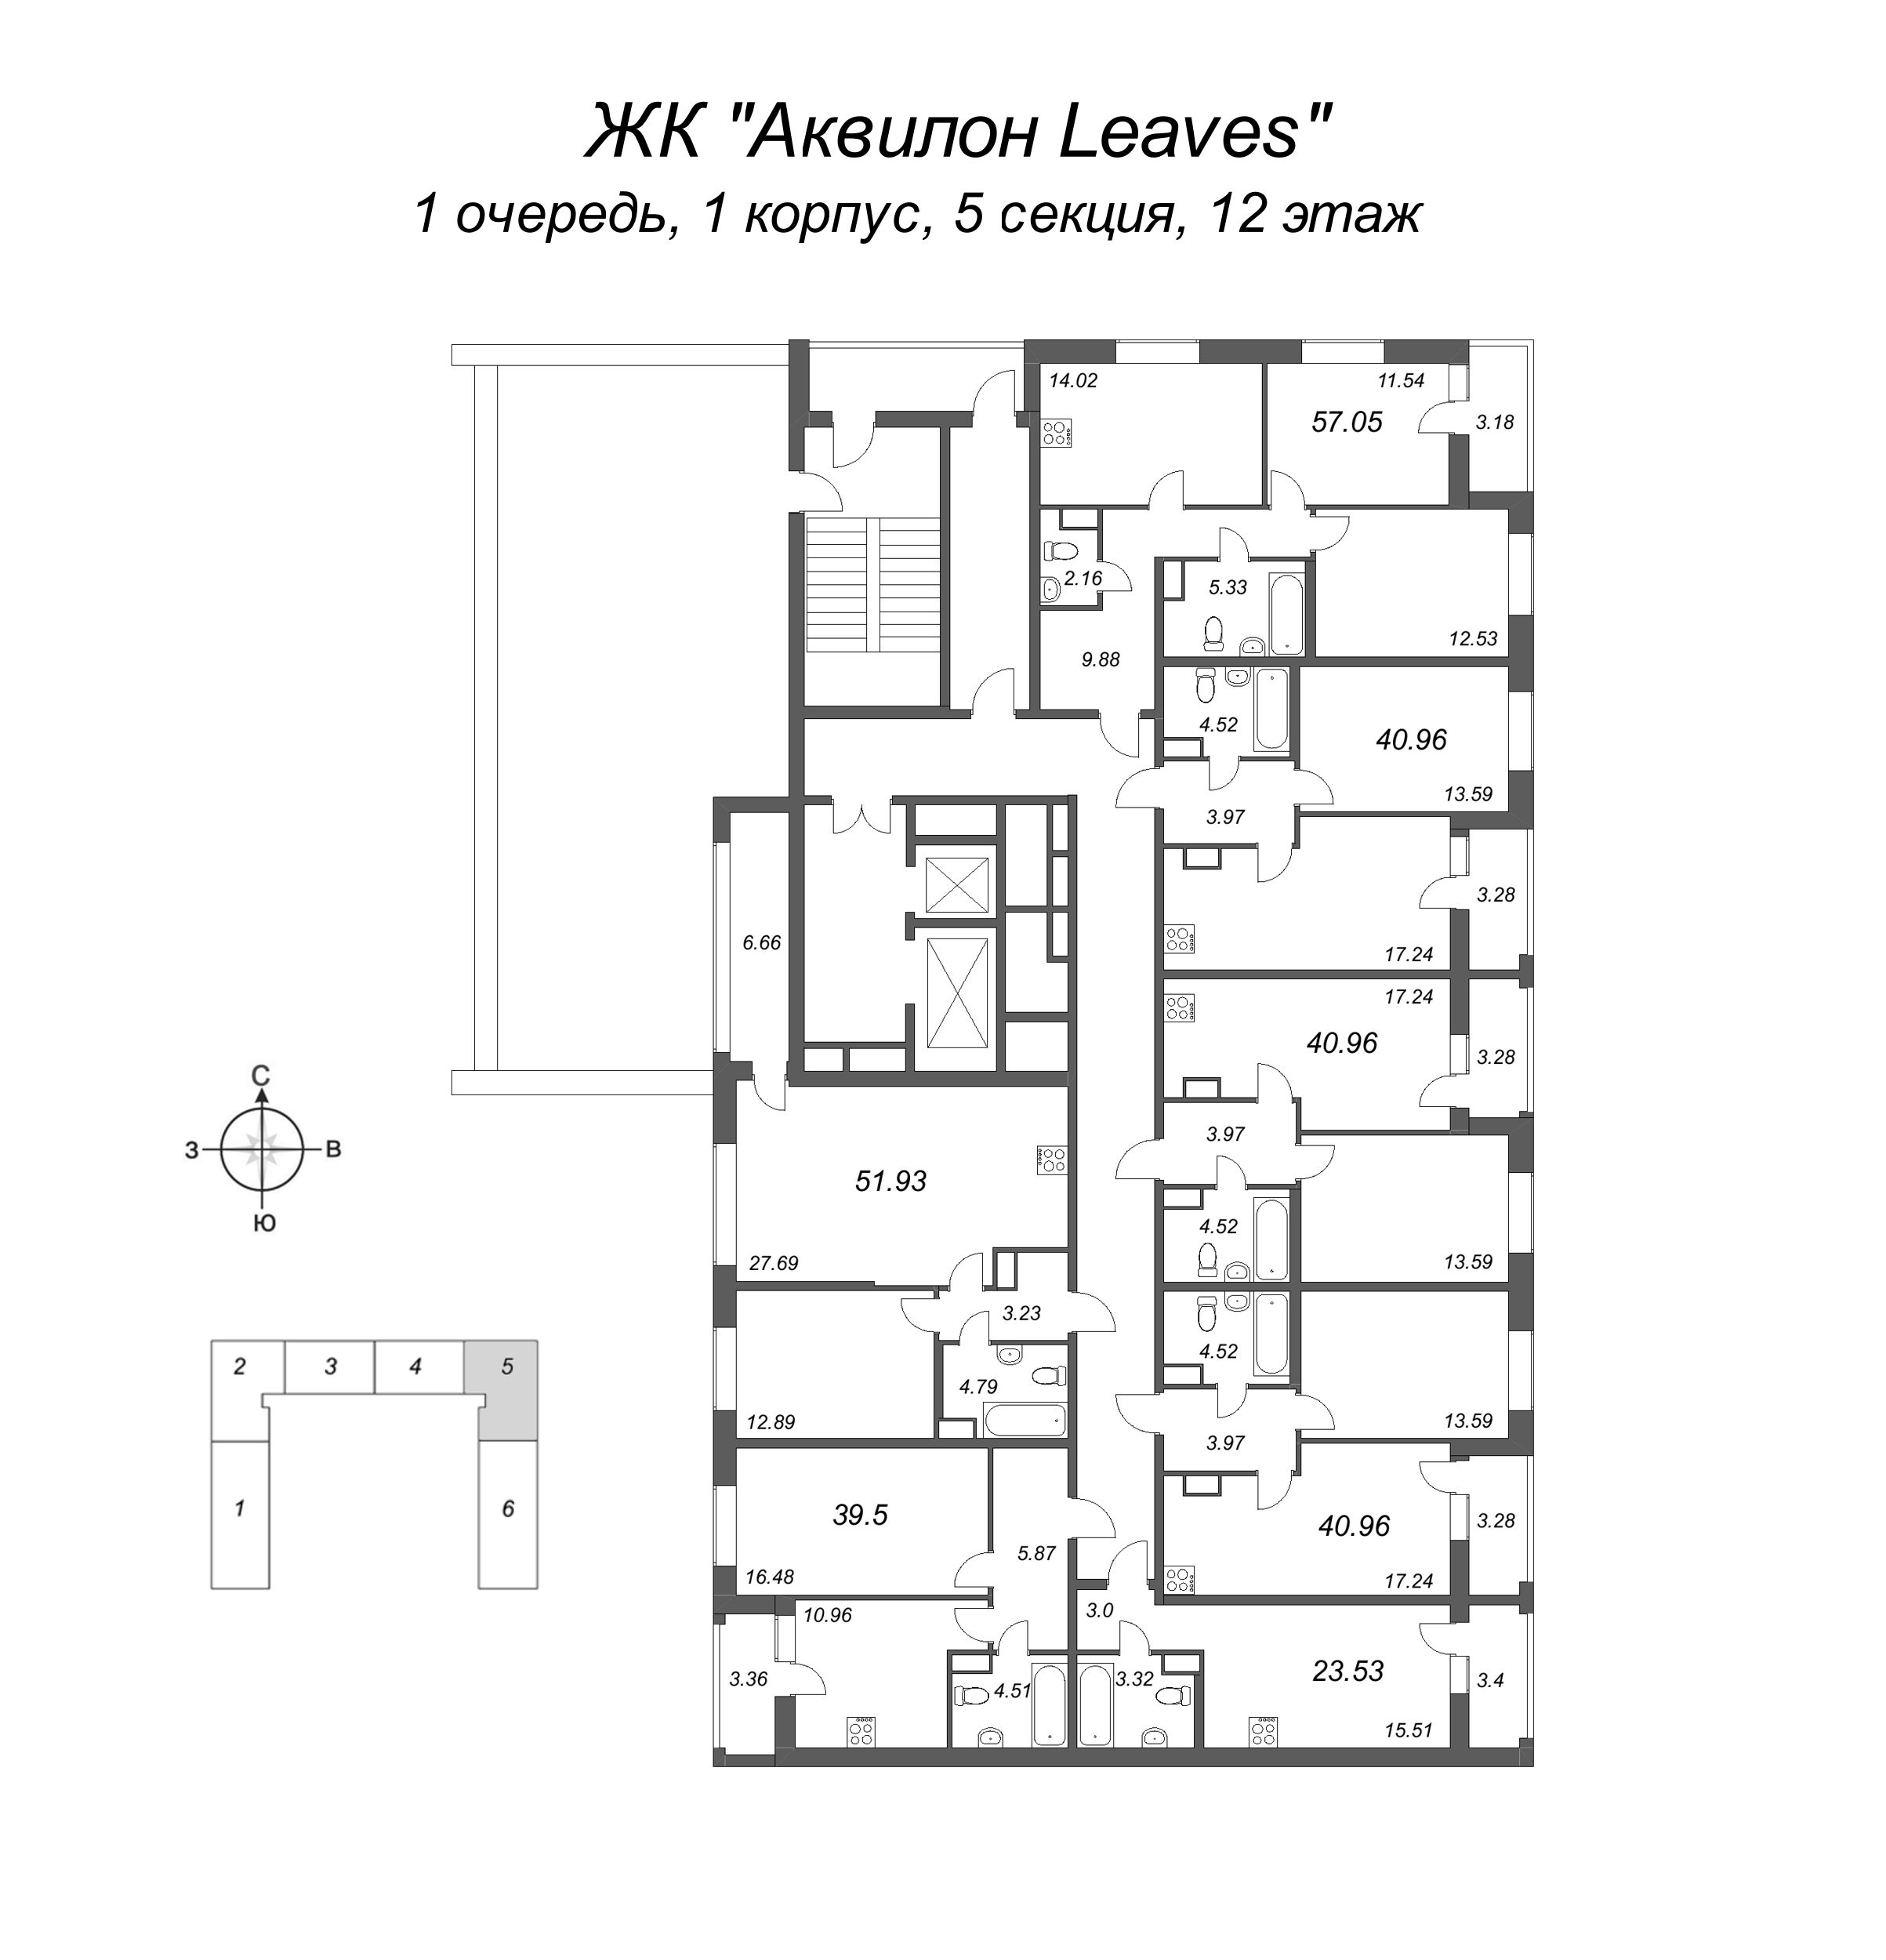 1-комнатная квартира, 39.5 м² в ЖК "Аквилон Leaves" - планировка этажа